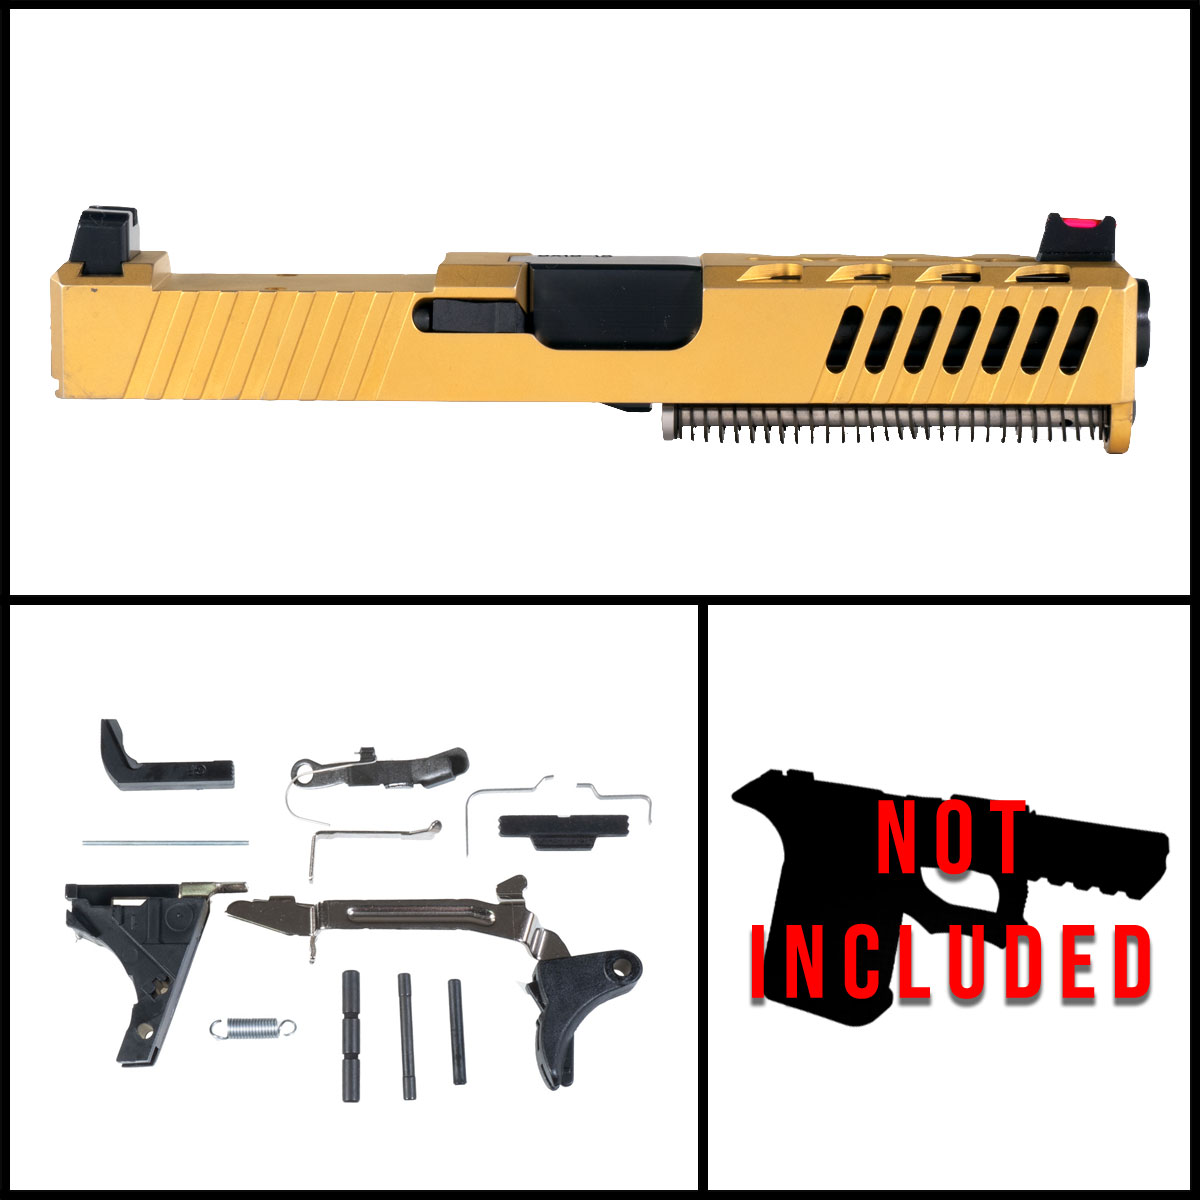 OTD 'Element 79' 9mm Full Pistol Build Kit (Everything Minus Frame) - Glock 19 Compatible